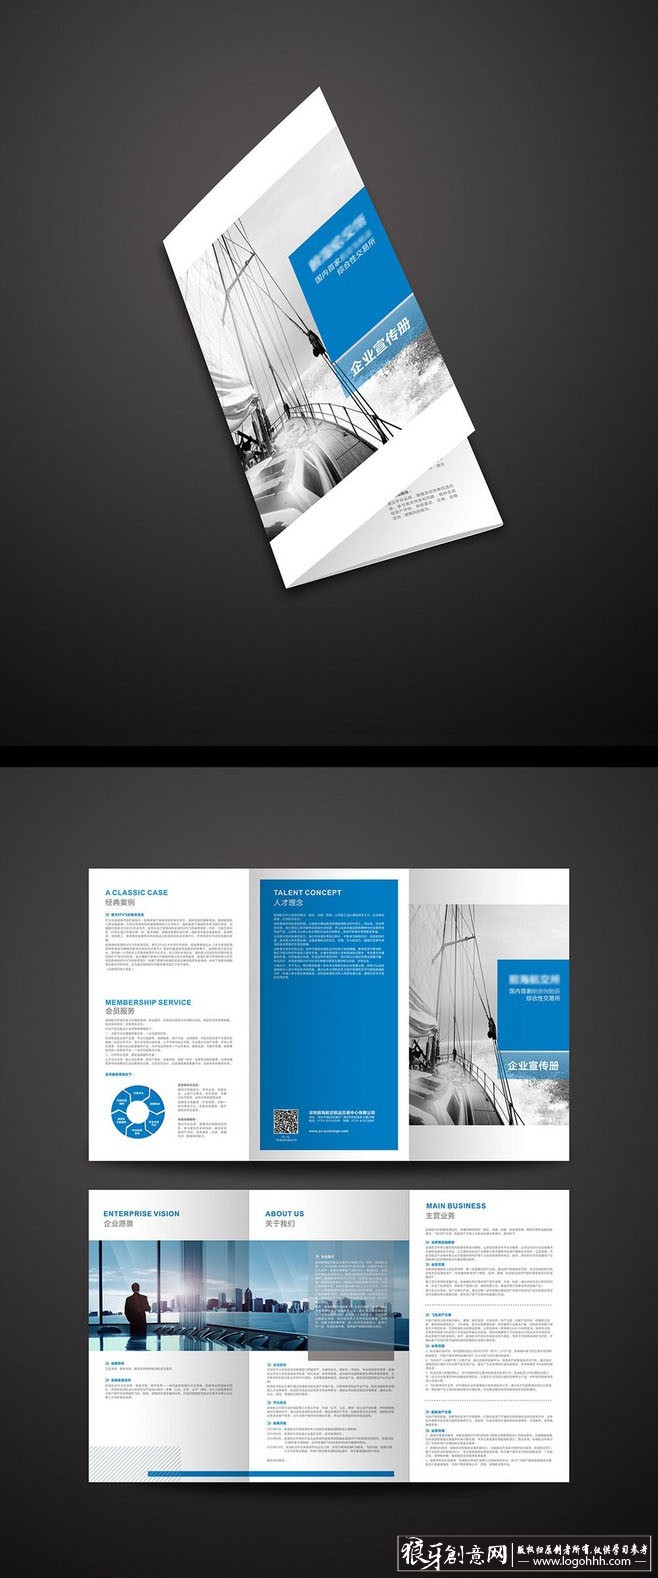 创意画册 企业宣传册设计 科技画册 企业画册 创意画册 折页设计 三图片